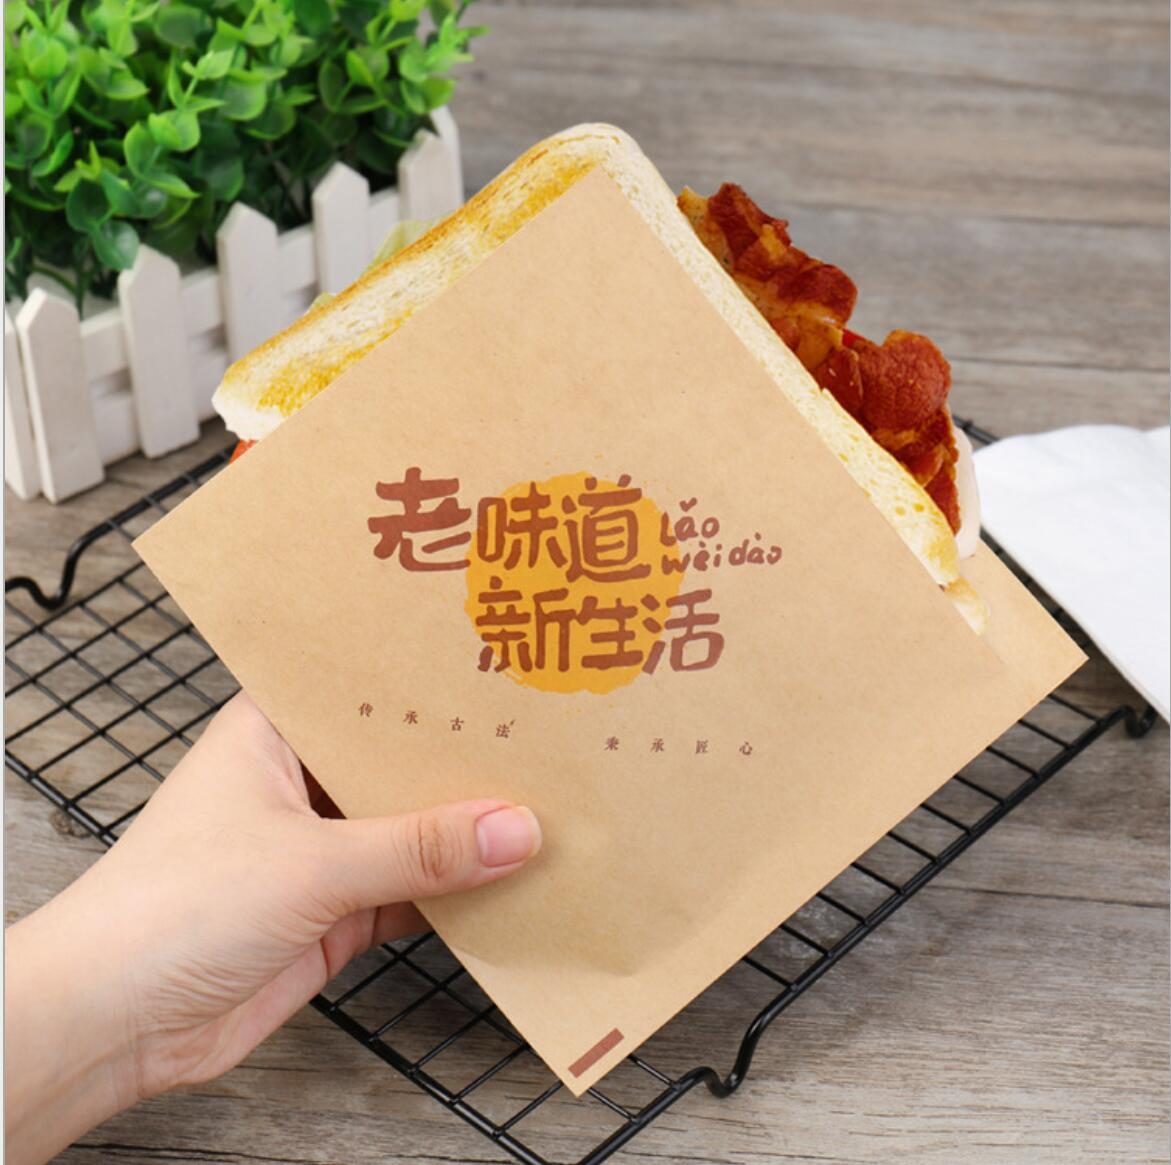 Paper Lunch Bag Wax Sandwich Size Quart